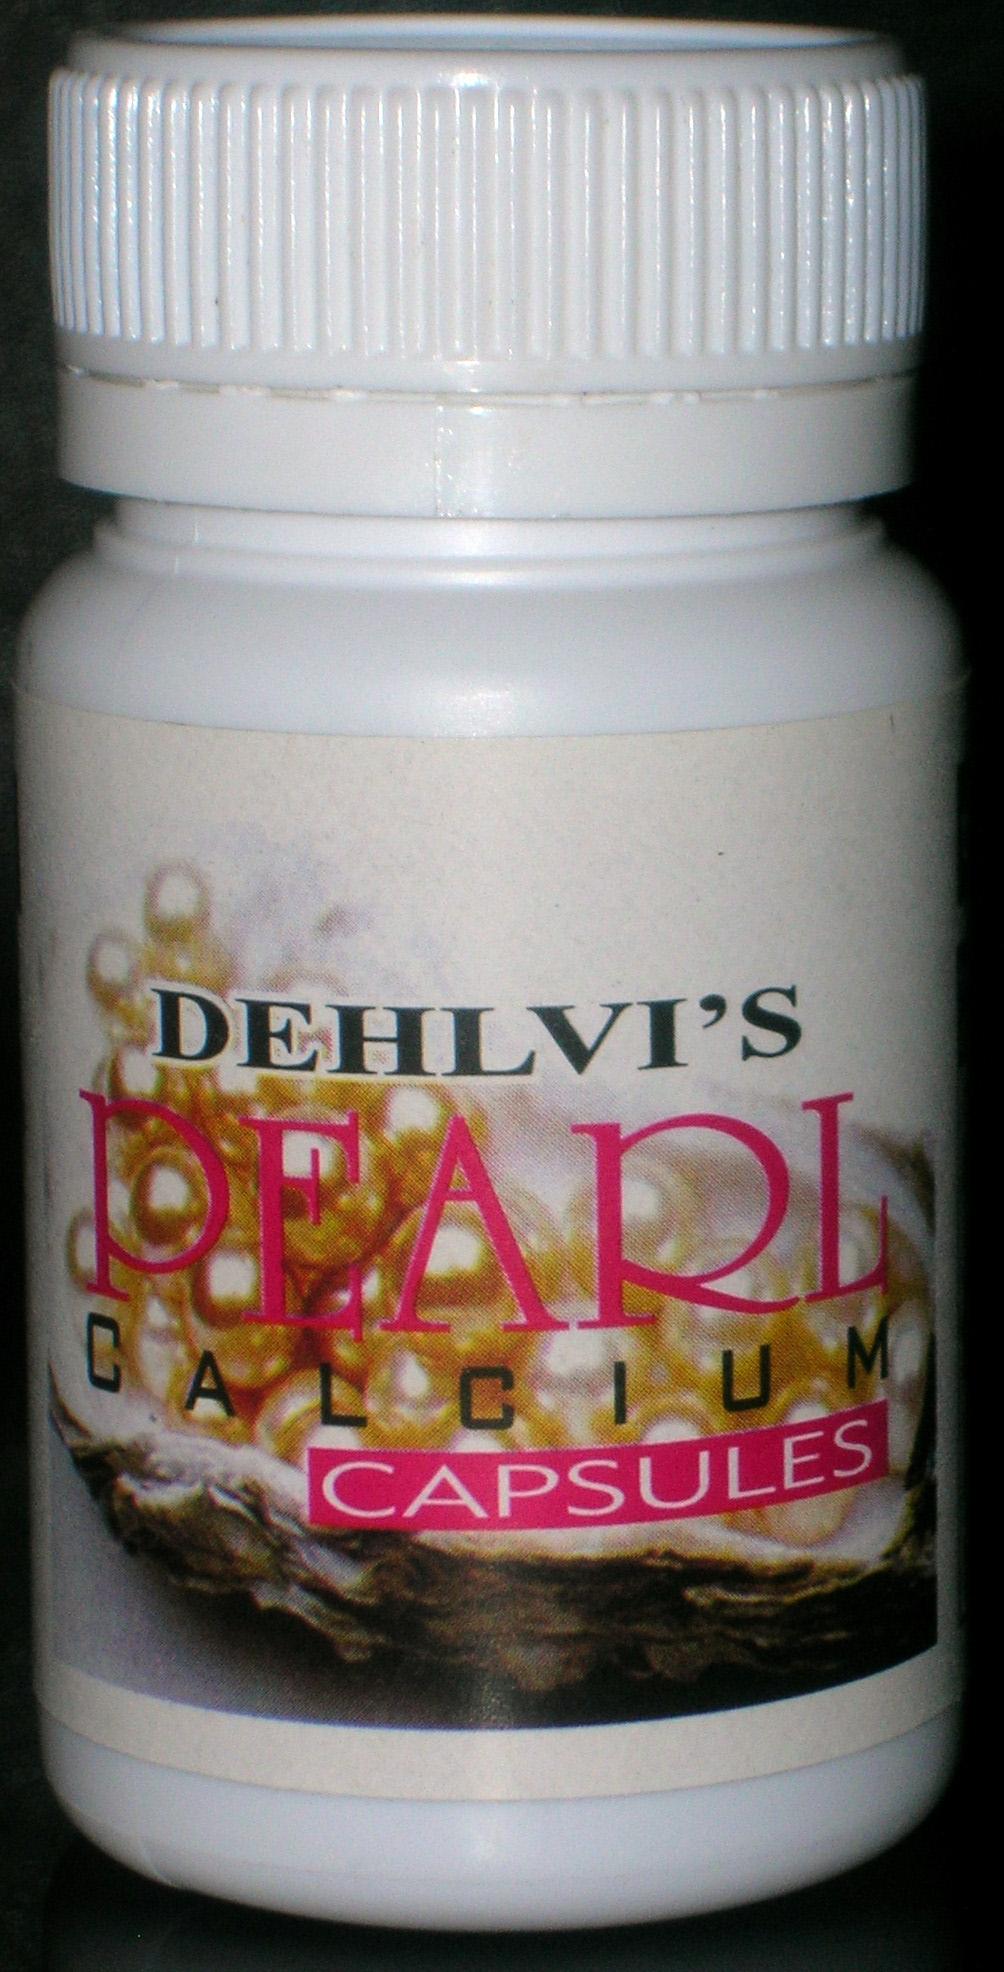 Pearl Calcium Capsule (dehlvi)